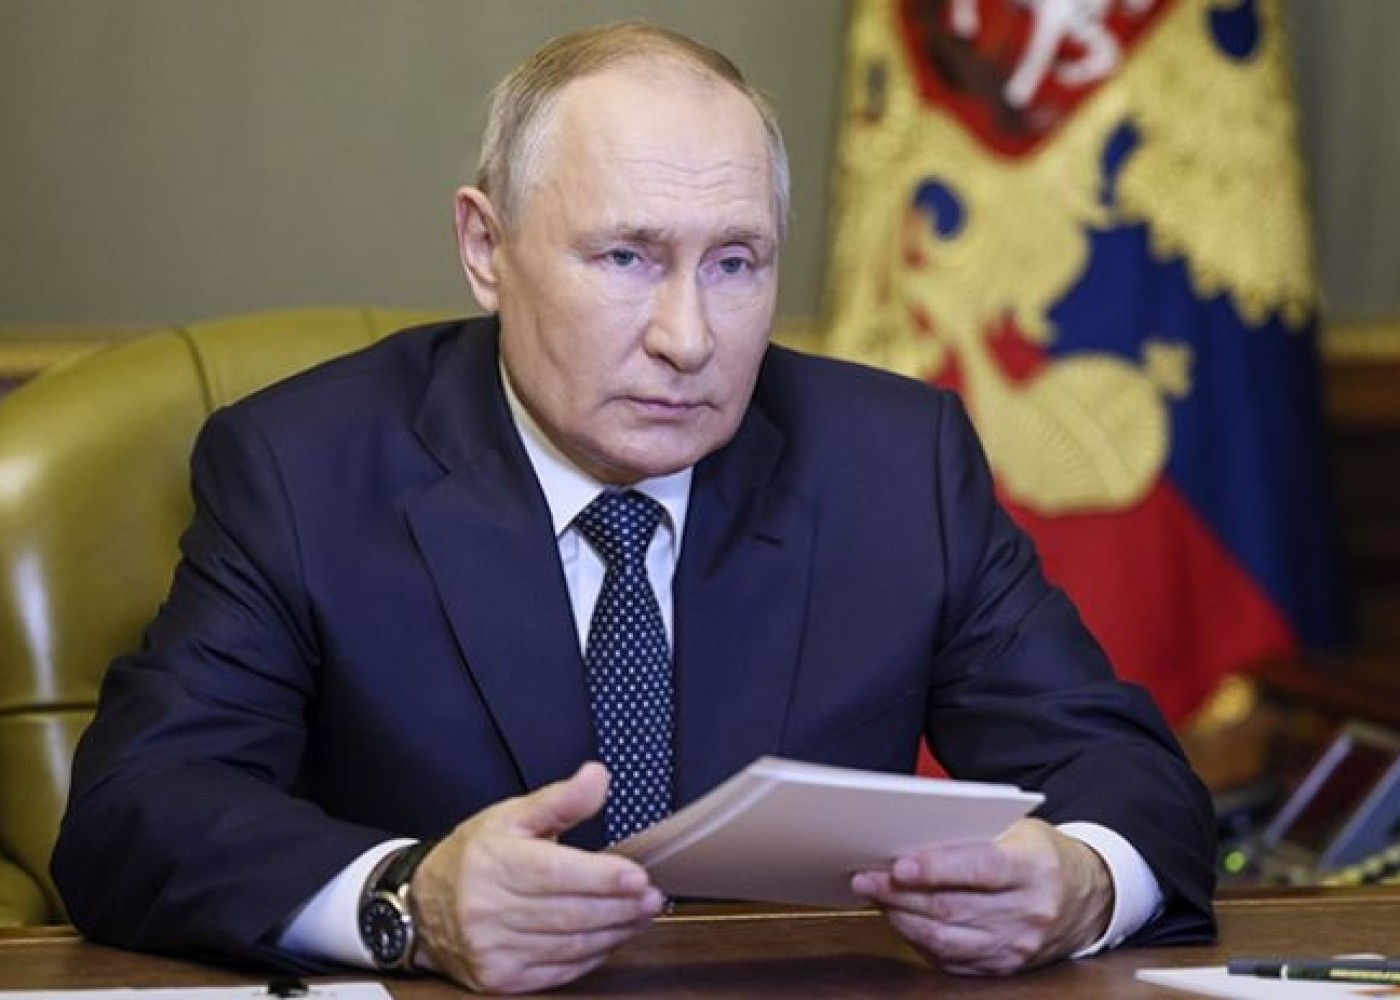 Putin yenidən Təhlükəsizlik Şurasını topladı